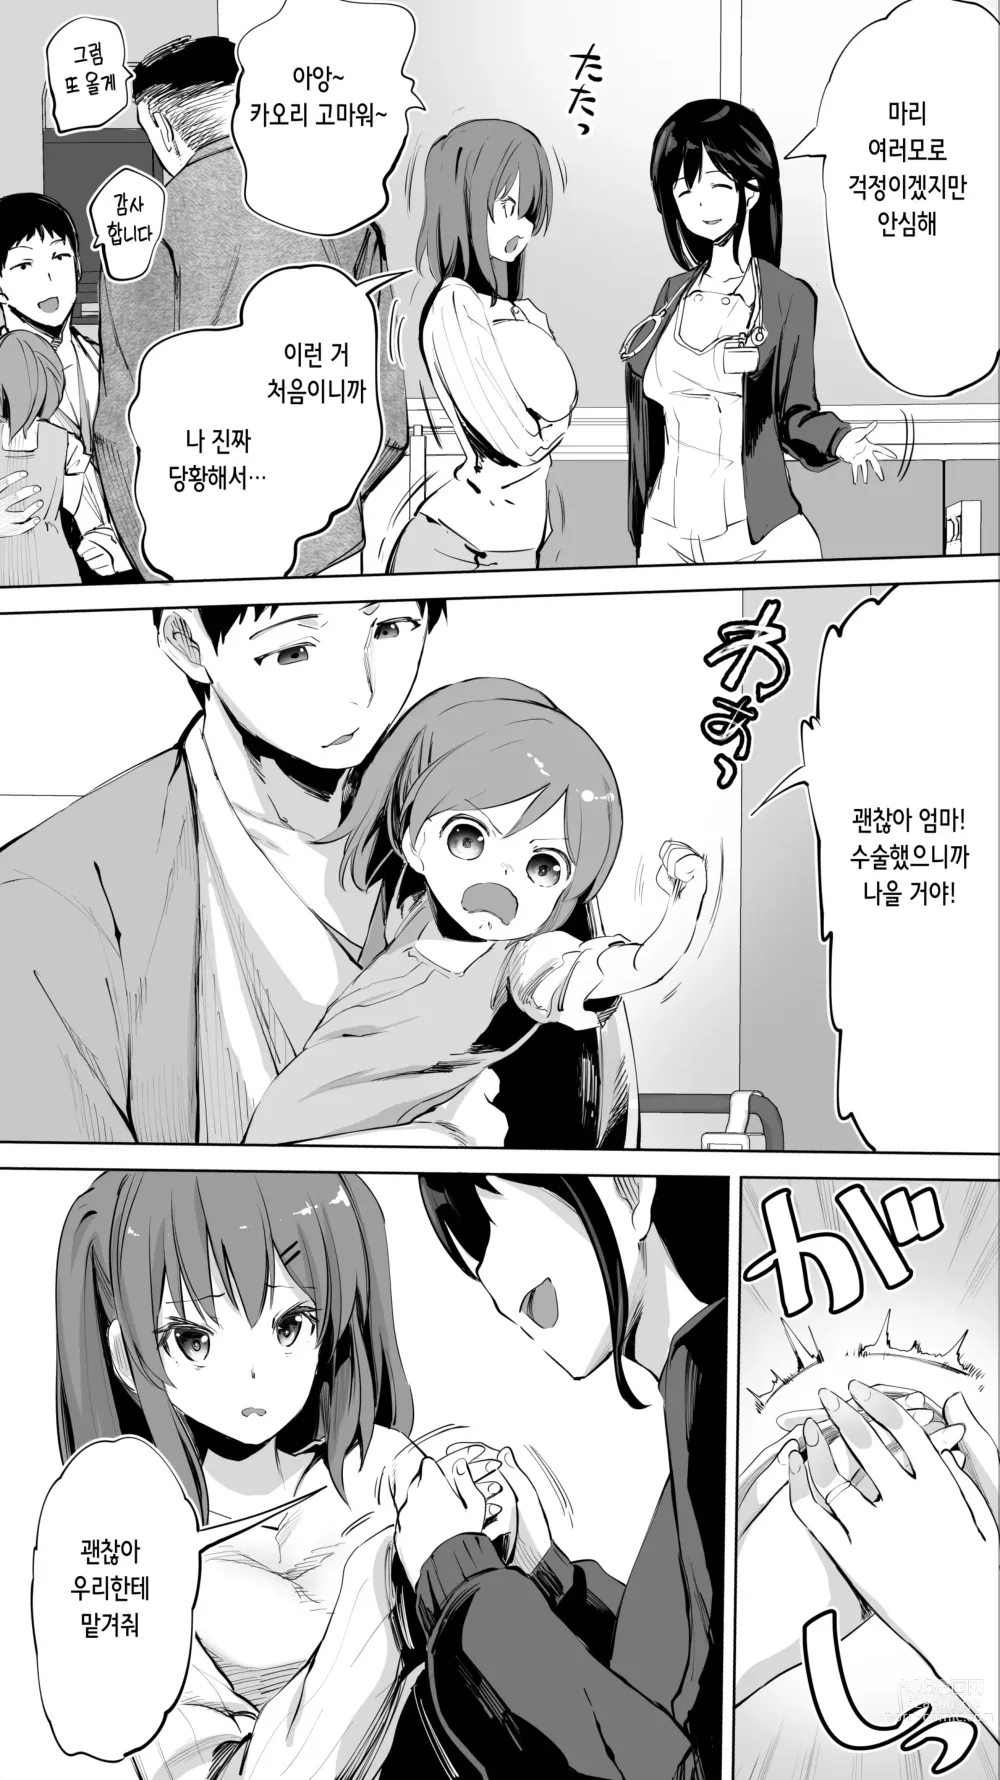 Page 9 of doujinshi 터전의 섹프 「동급생 간호사 K」